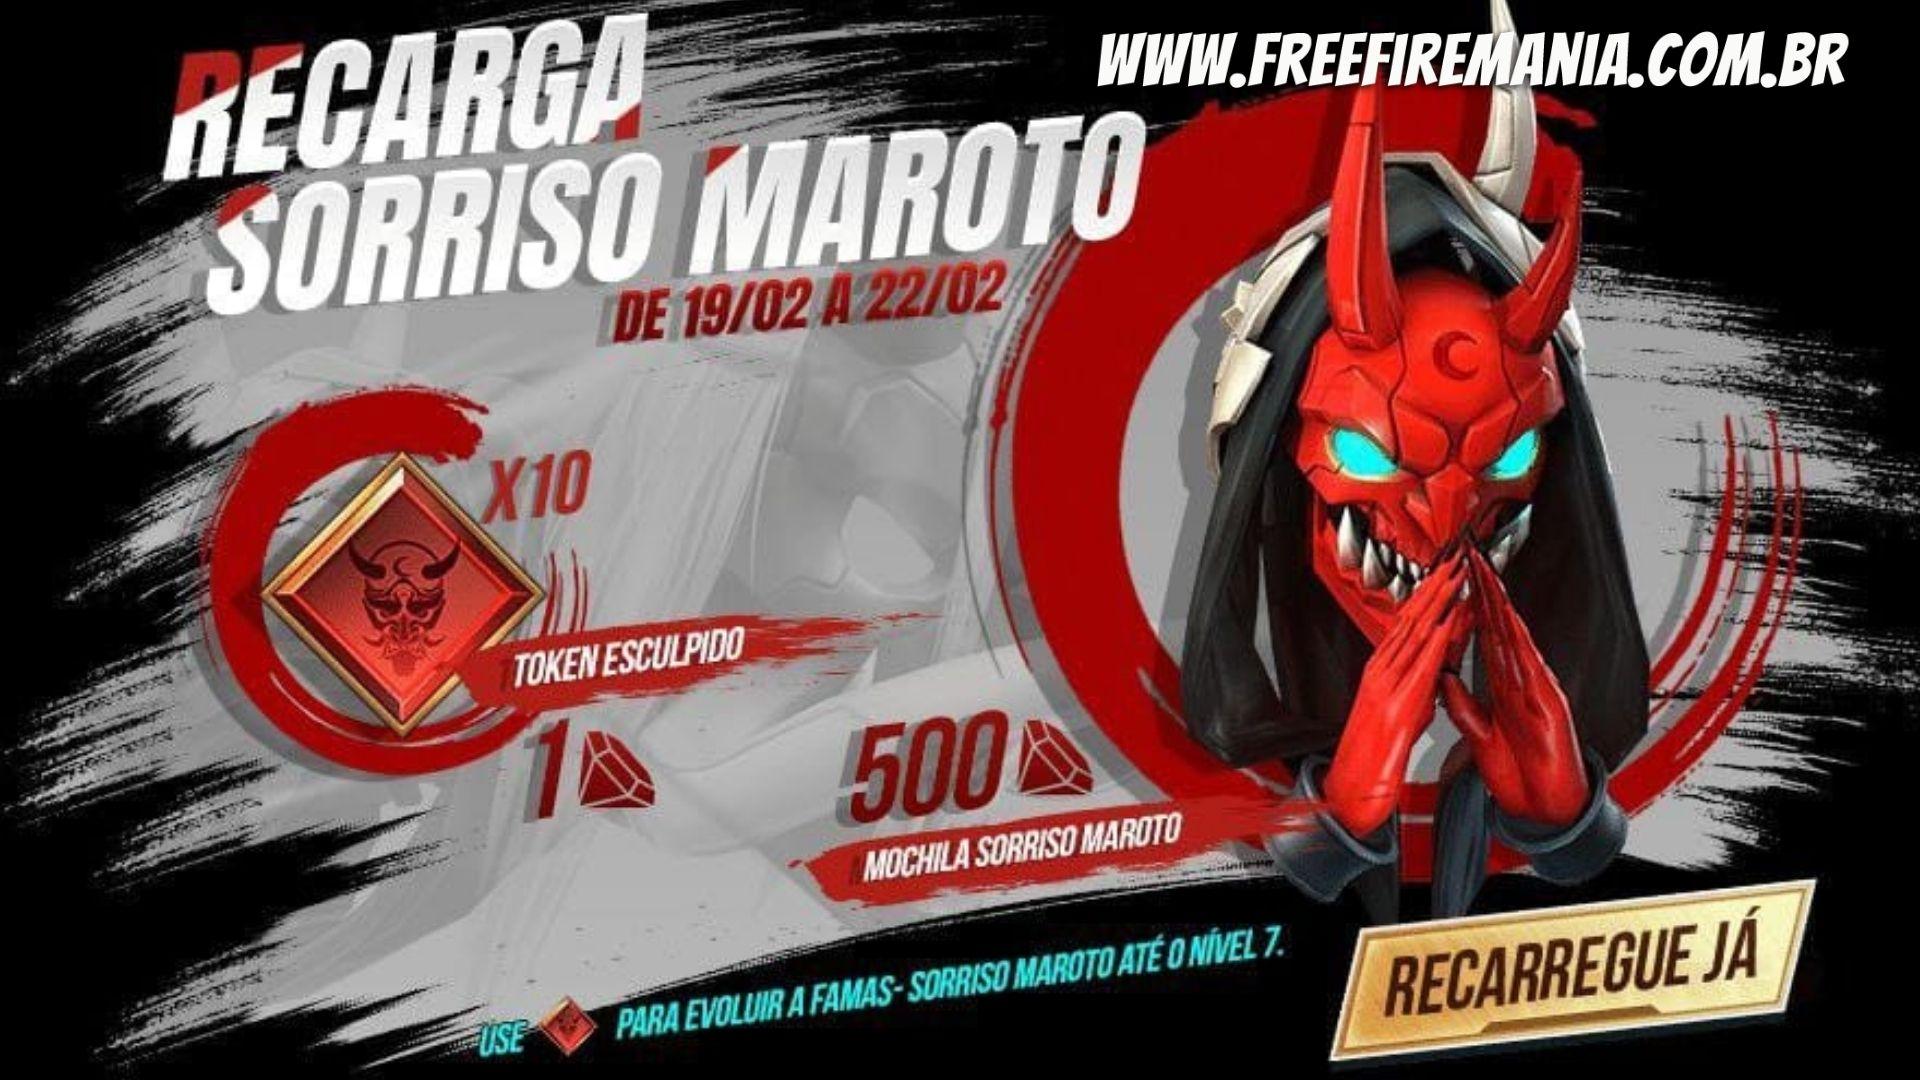 Free Fire recebe Mochila Sorriso Maroto como recompensa de recarga